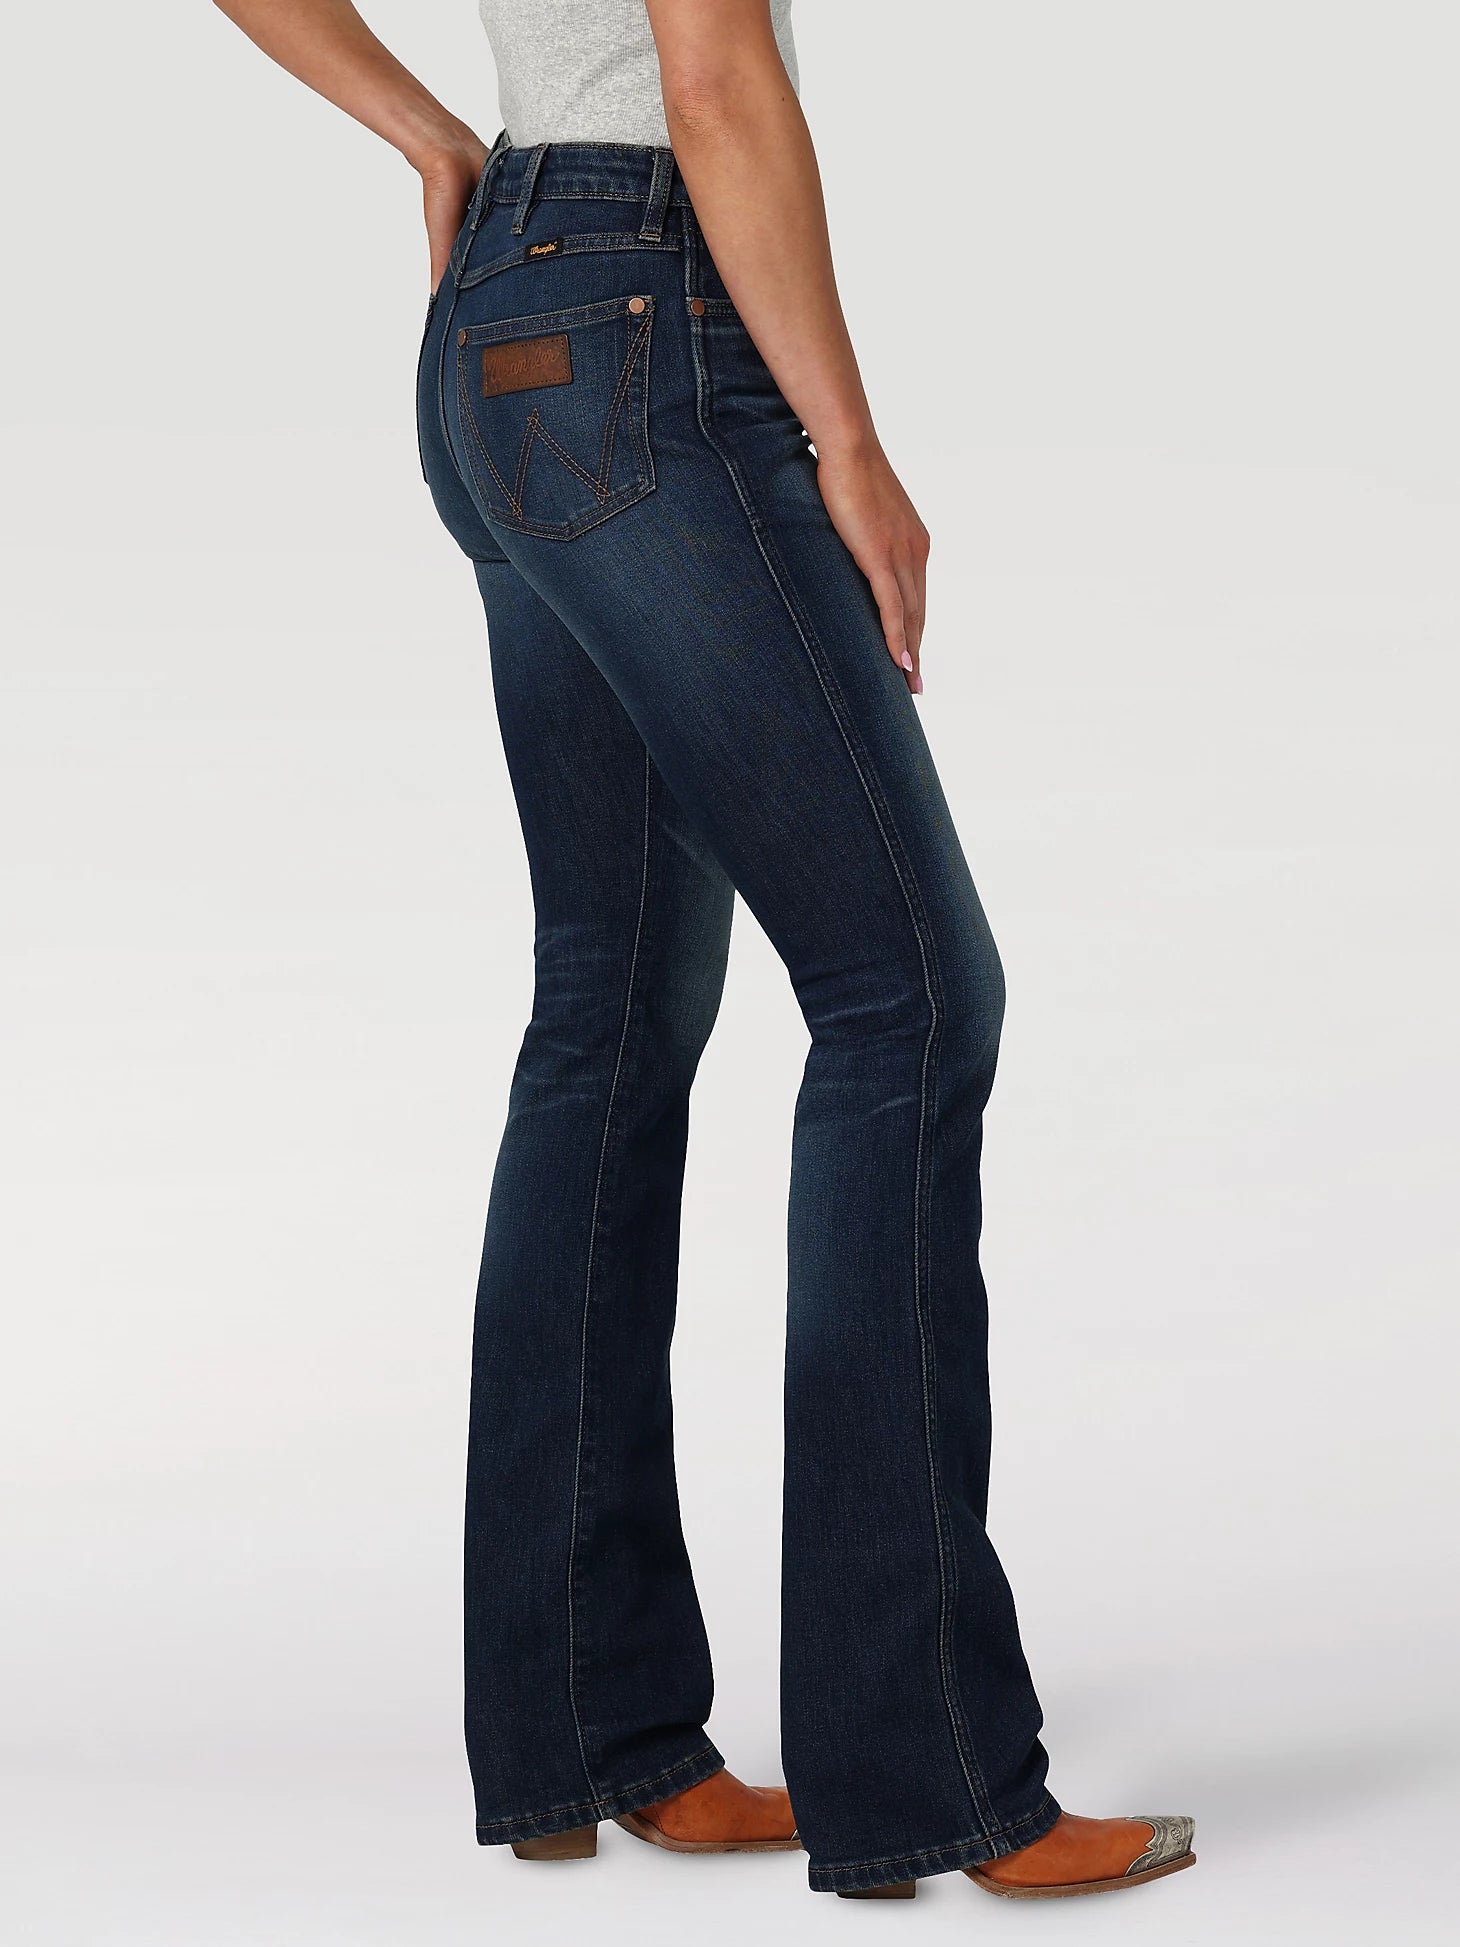 Women's Wrangler Retro® Premium High Rise Trouser Jean, Women's JEANS, Wrangler®